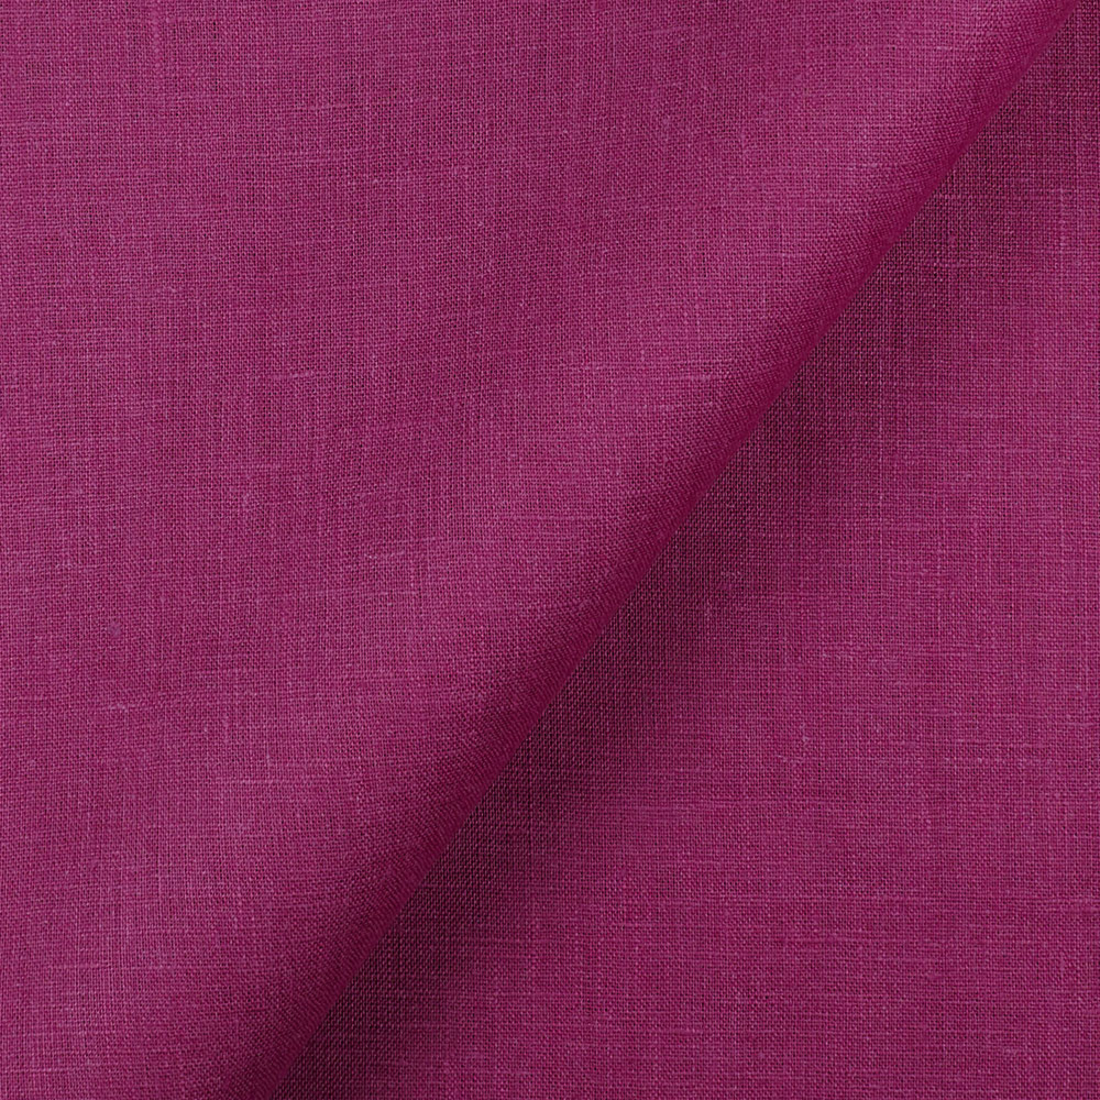 Fabric IL019 All-purpose 100% Linen Fabric Purple Wine Softened